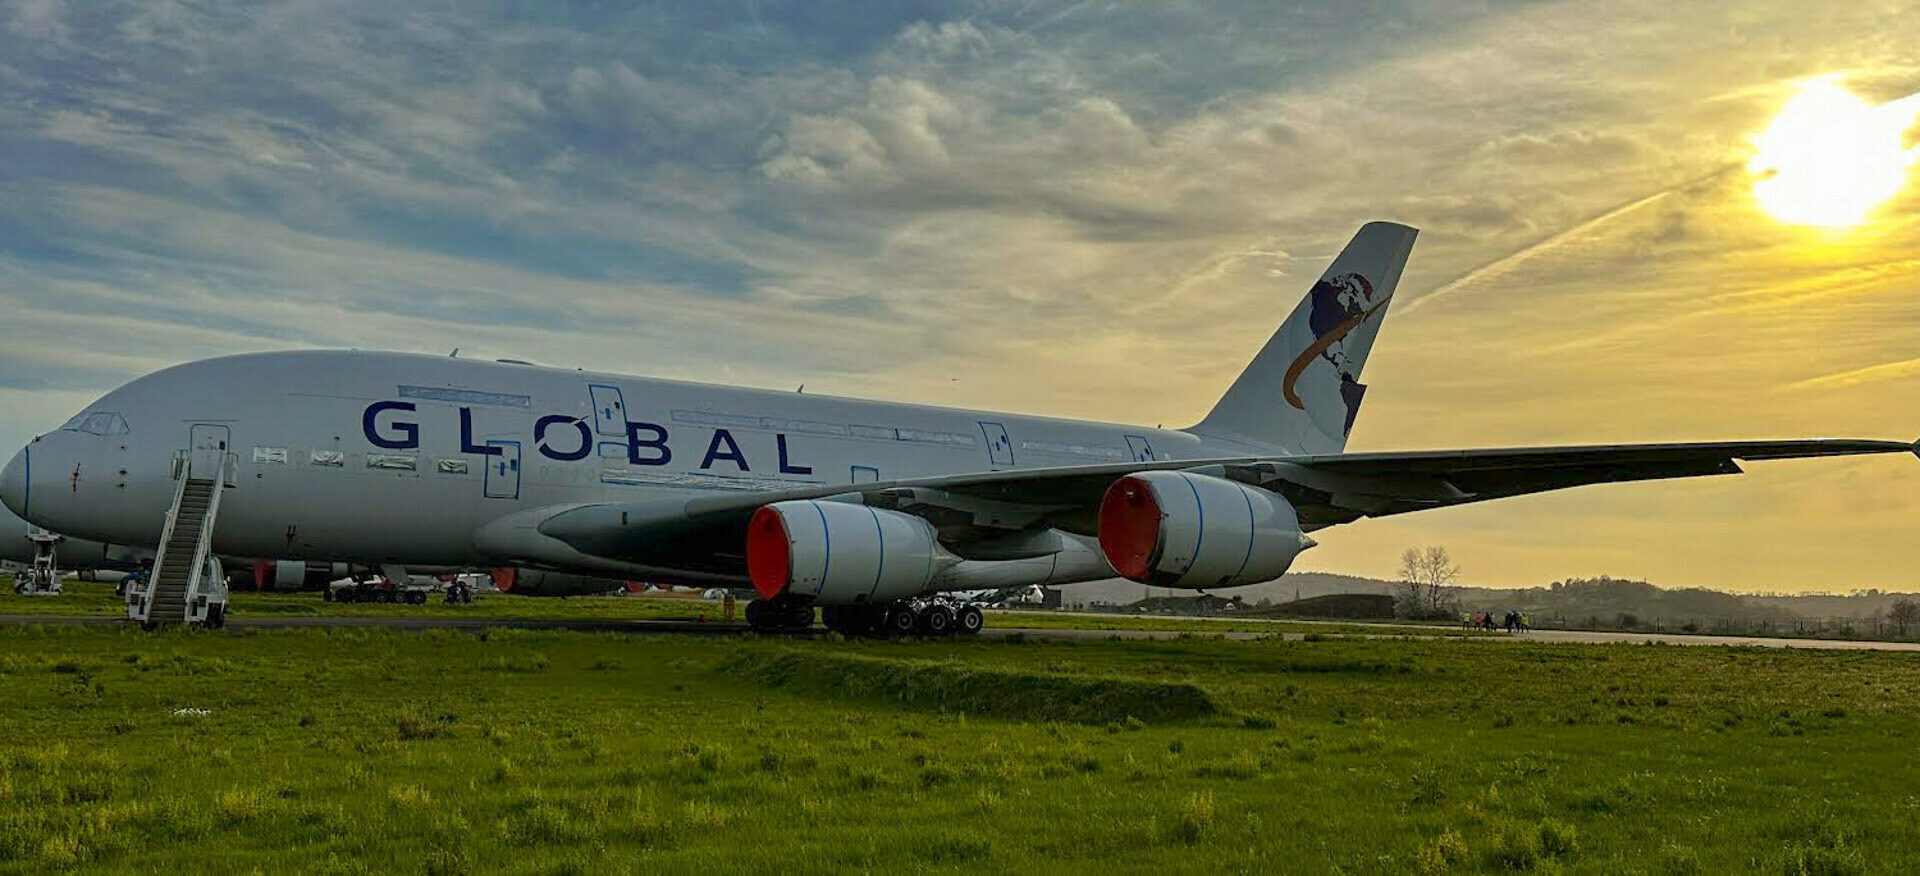 מטוס איירבוס A380 של גלובאל איירליינס